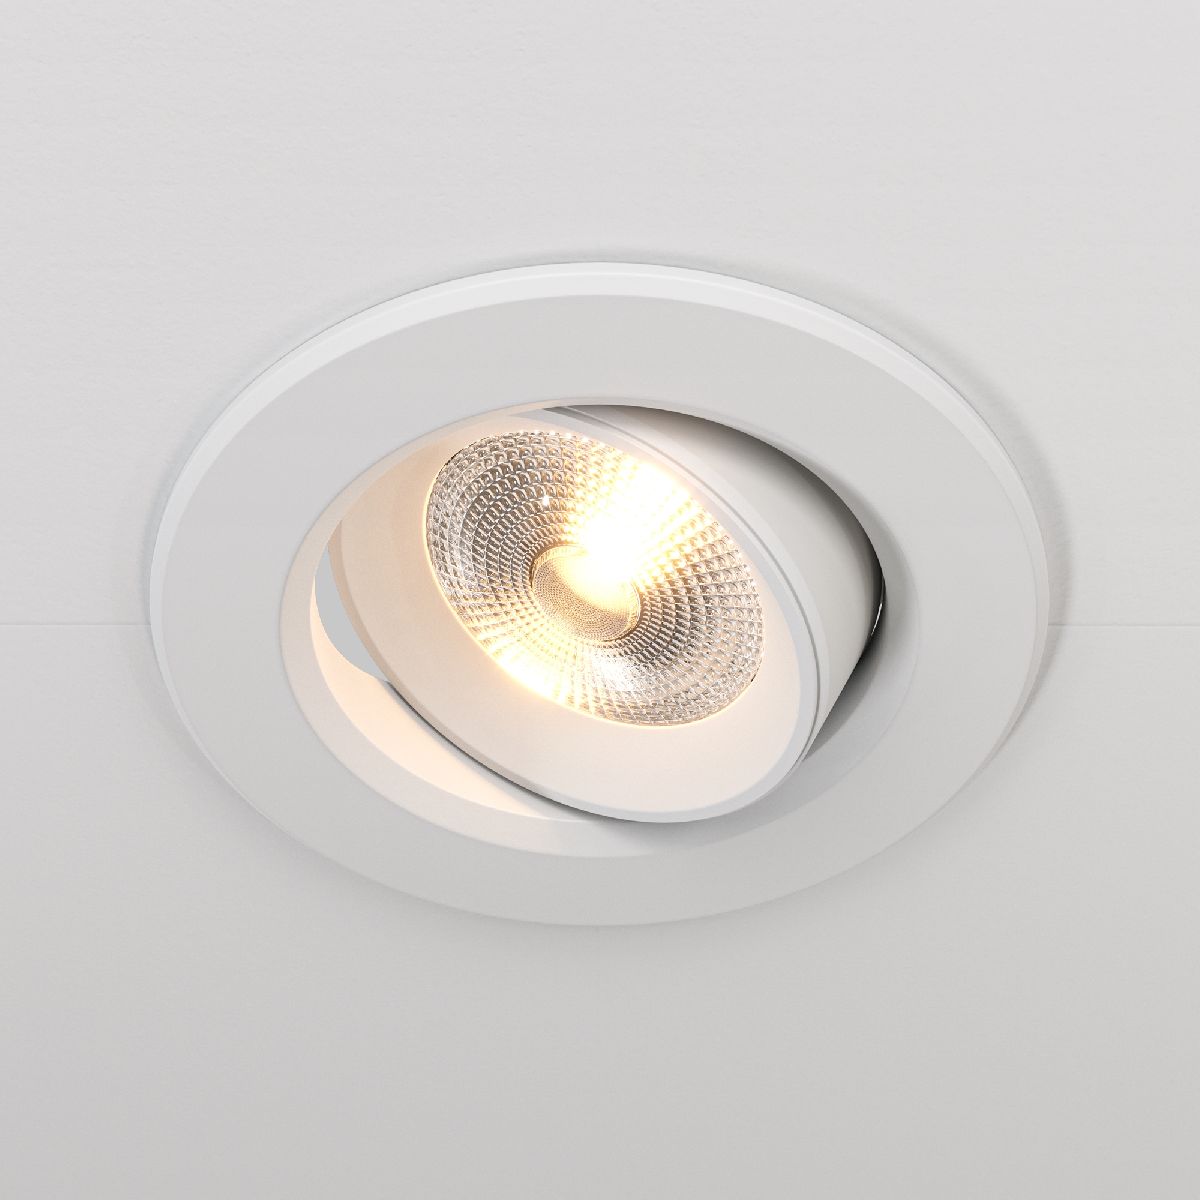 Встраиваемый светодиодный светильник Maytoni Phill DL013-6-L9W